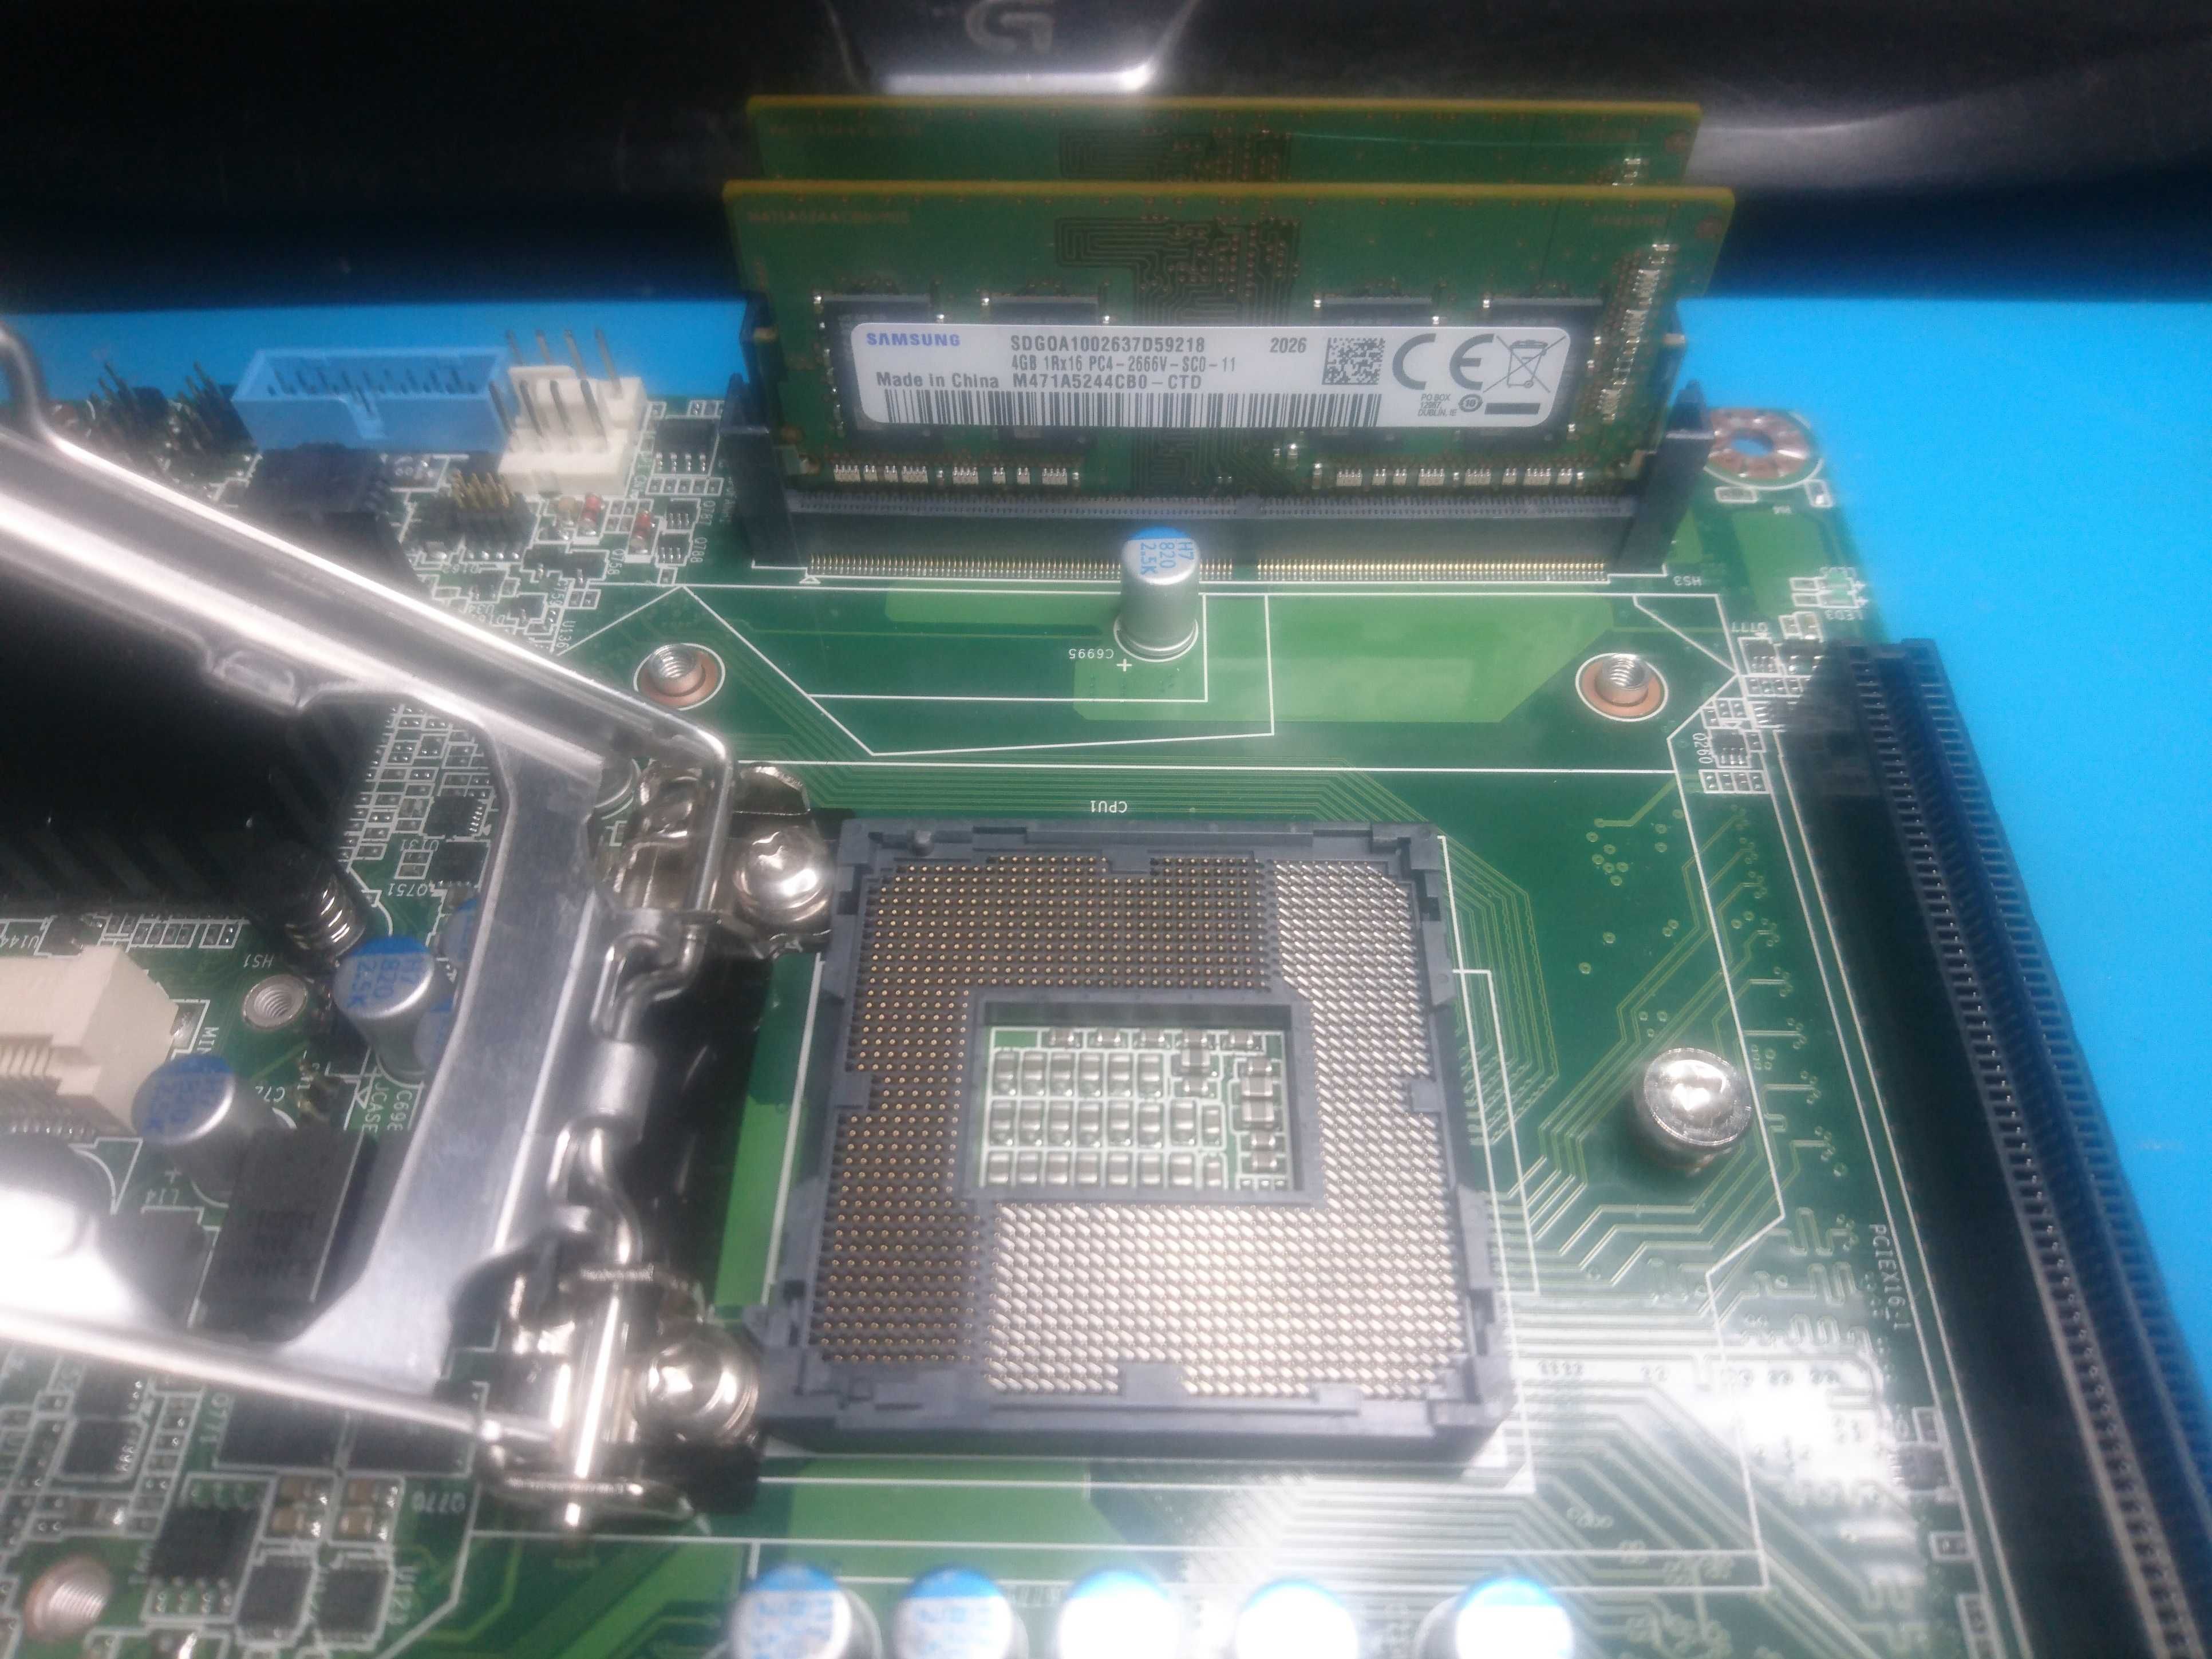 AIMB-275 Mini-ITX / s1151 / Dual LAN, PCIe 3 x16/m2 + 8Gb Ram